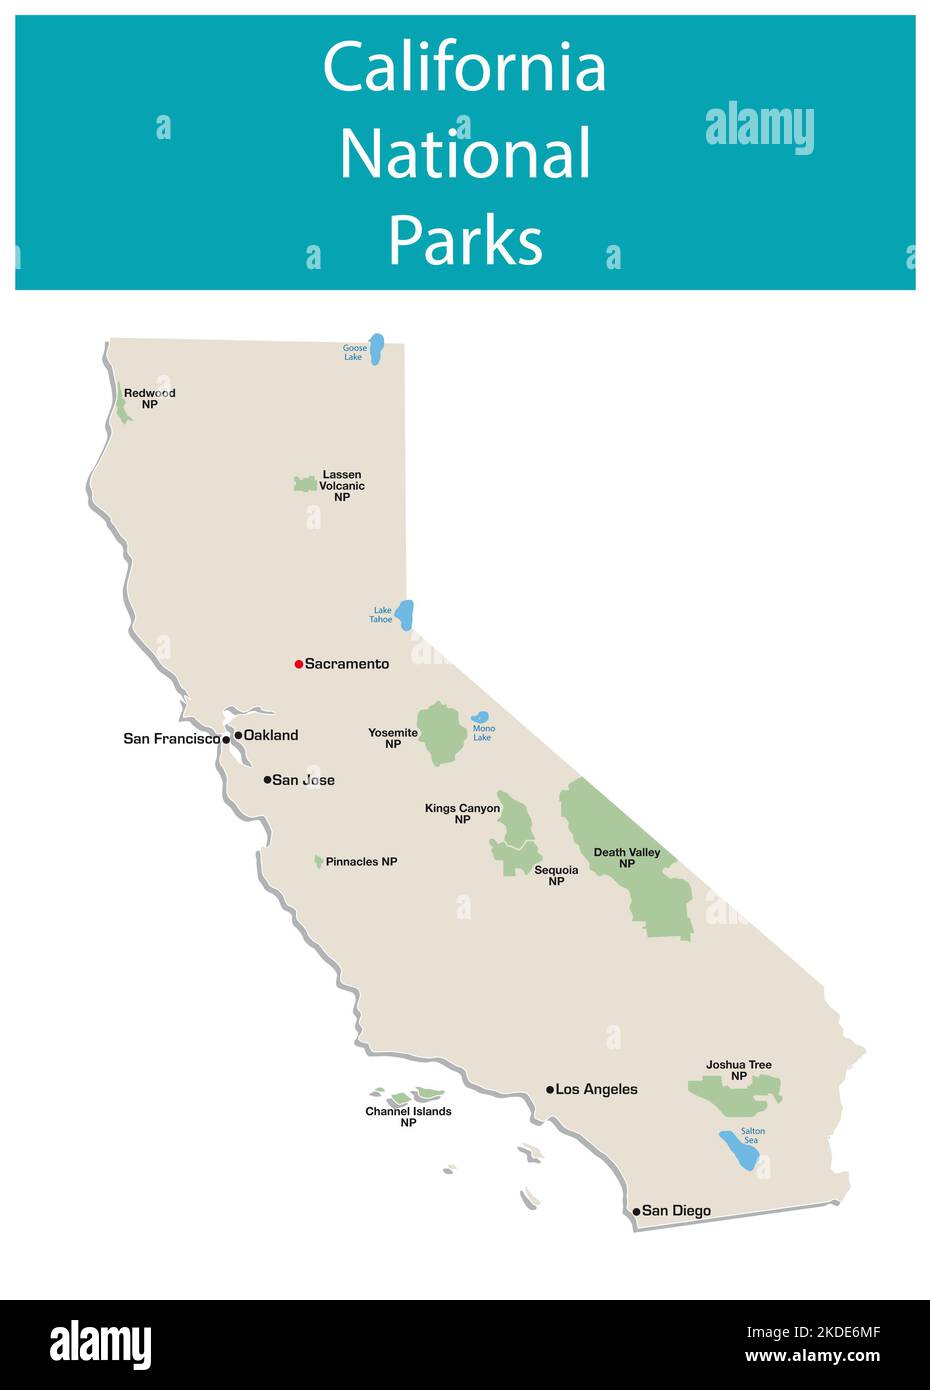 mapa informativo vectorial de los parques nacionales de california Foto de stock